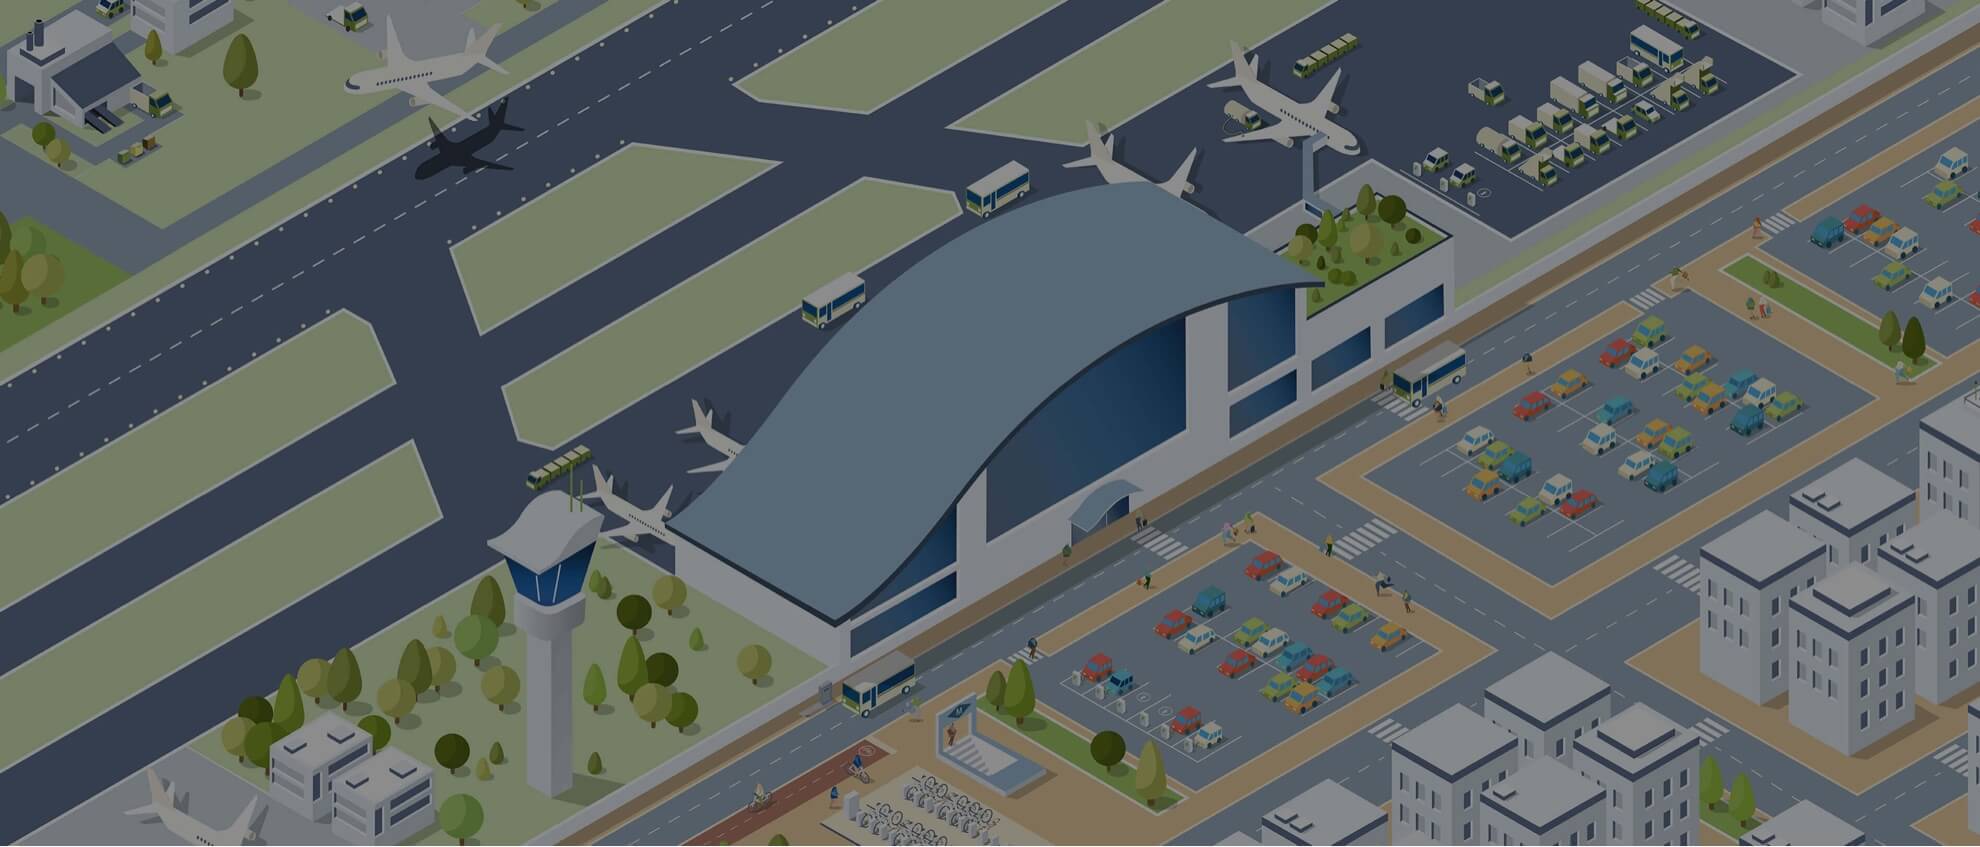 Primer detalle de la ilustración de un aeropuerto